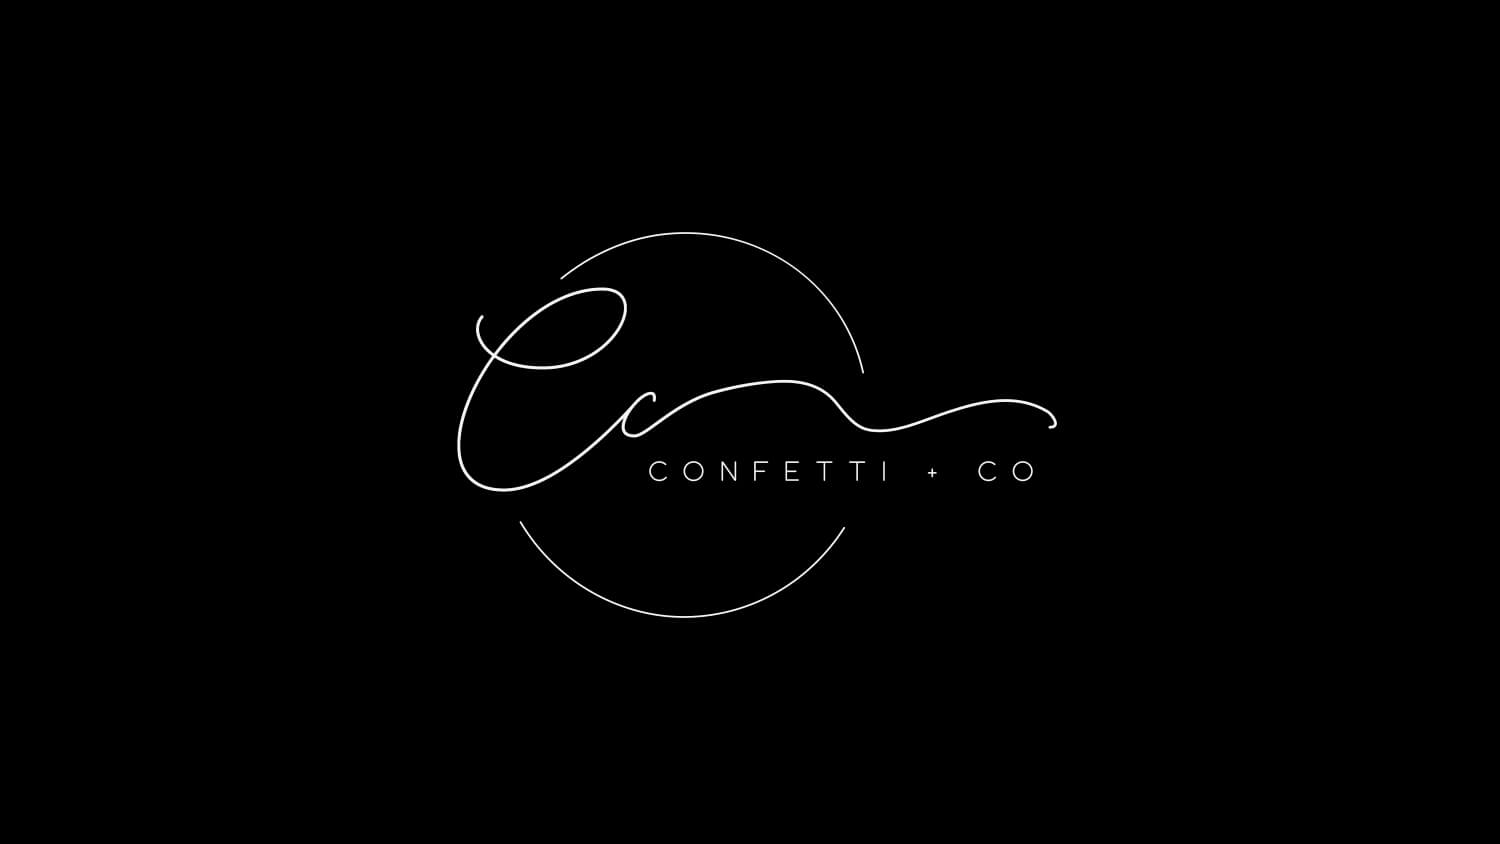 Business branding portfolio for Confetti & Co, Perth WA